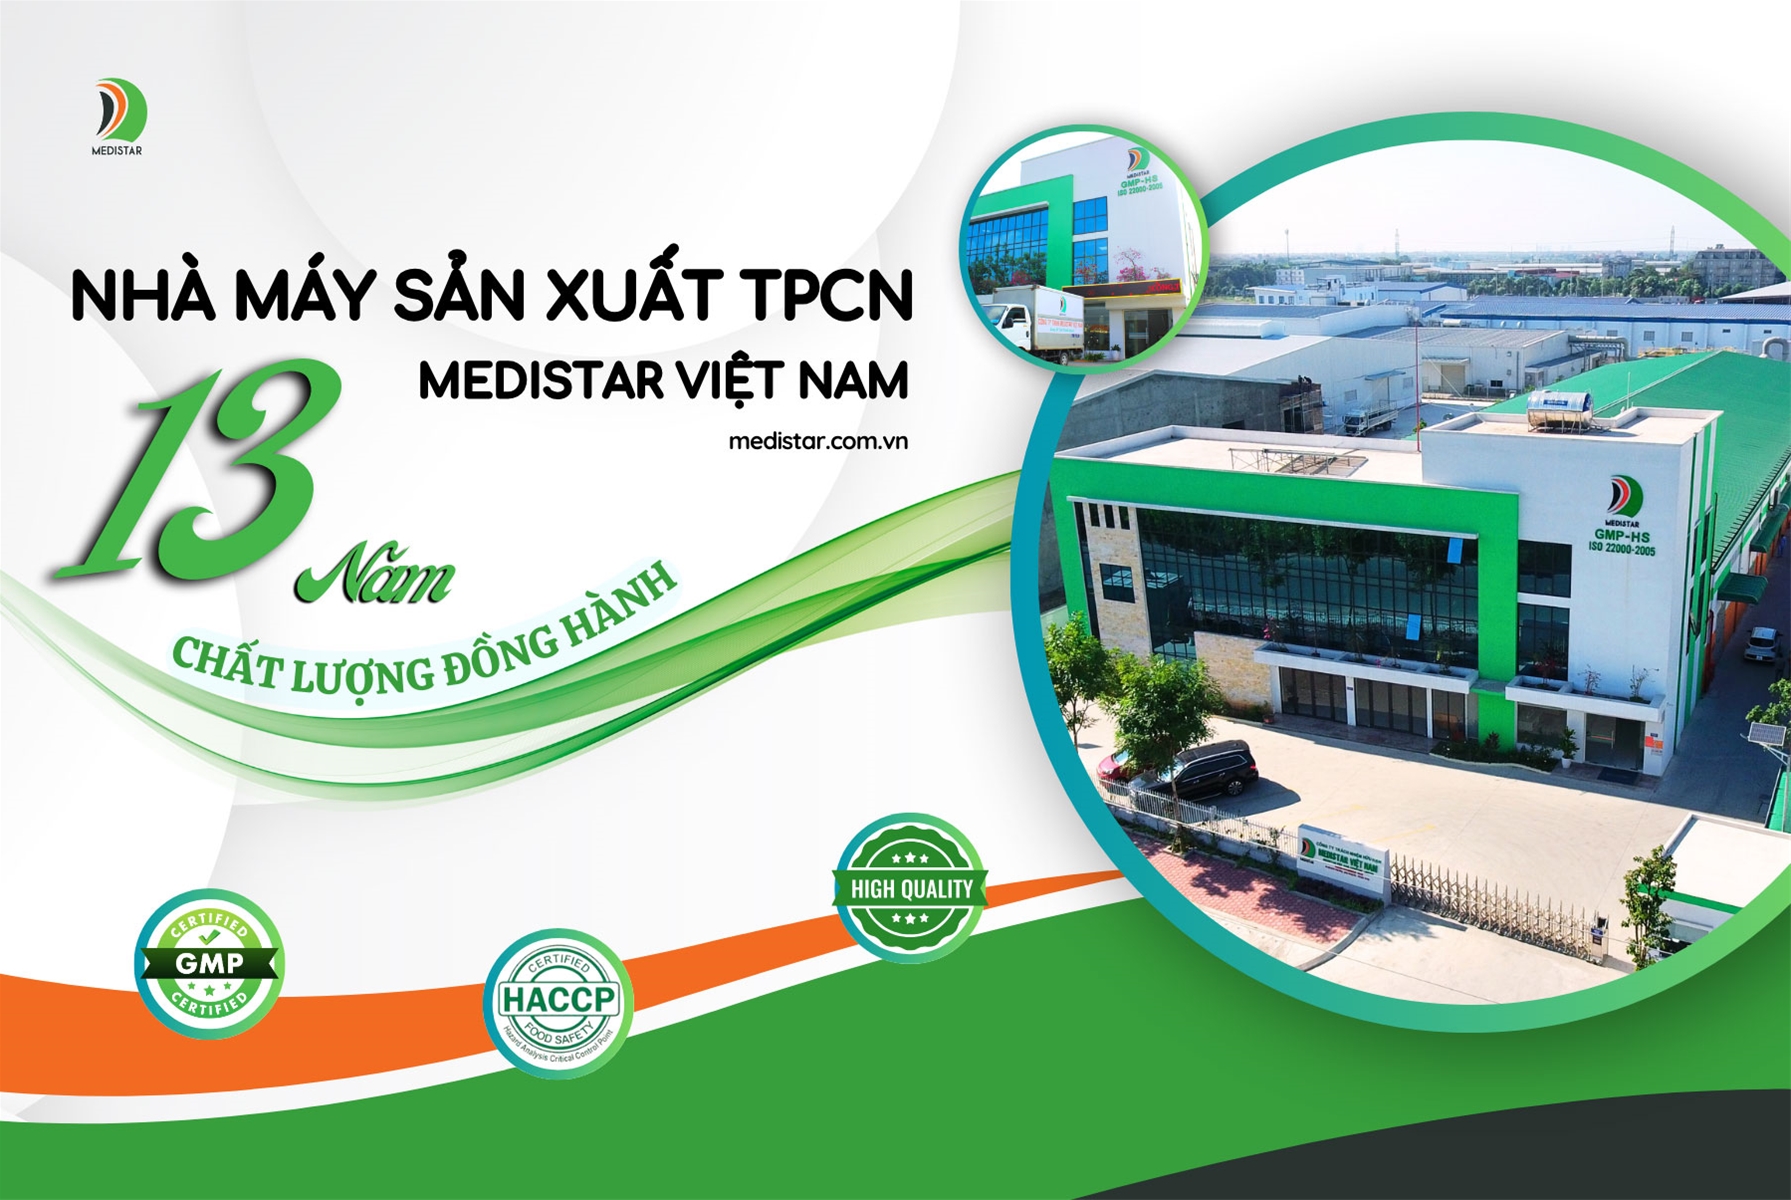 nhà máy Medistar Việt Nam